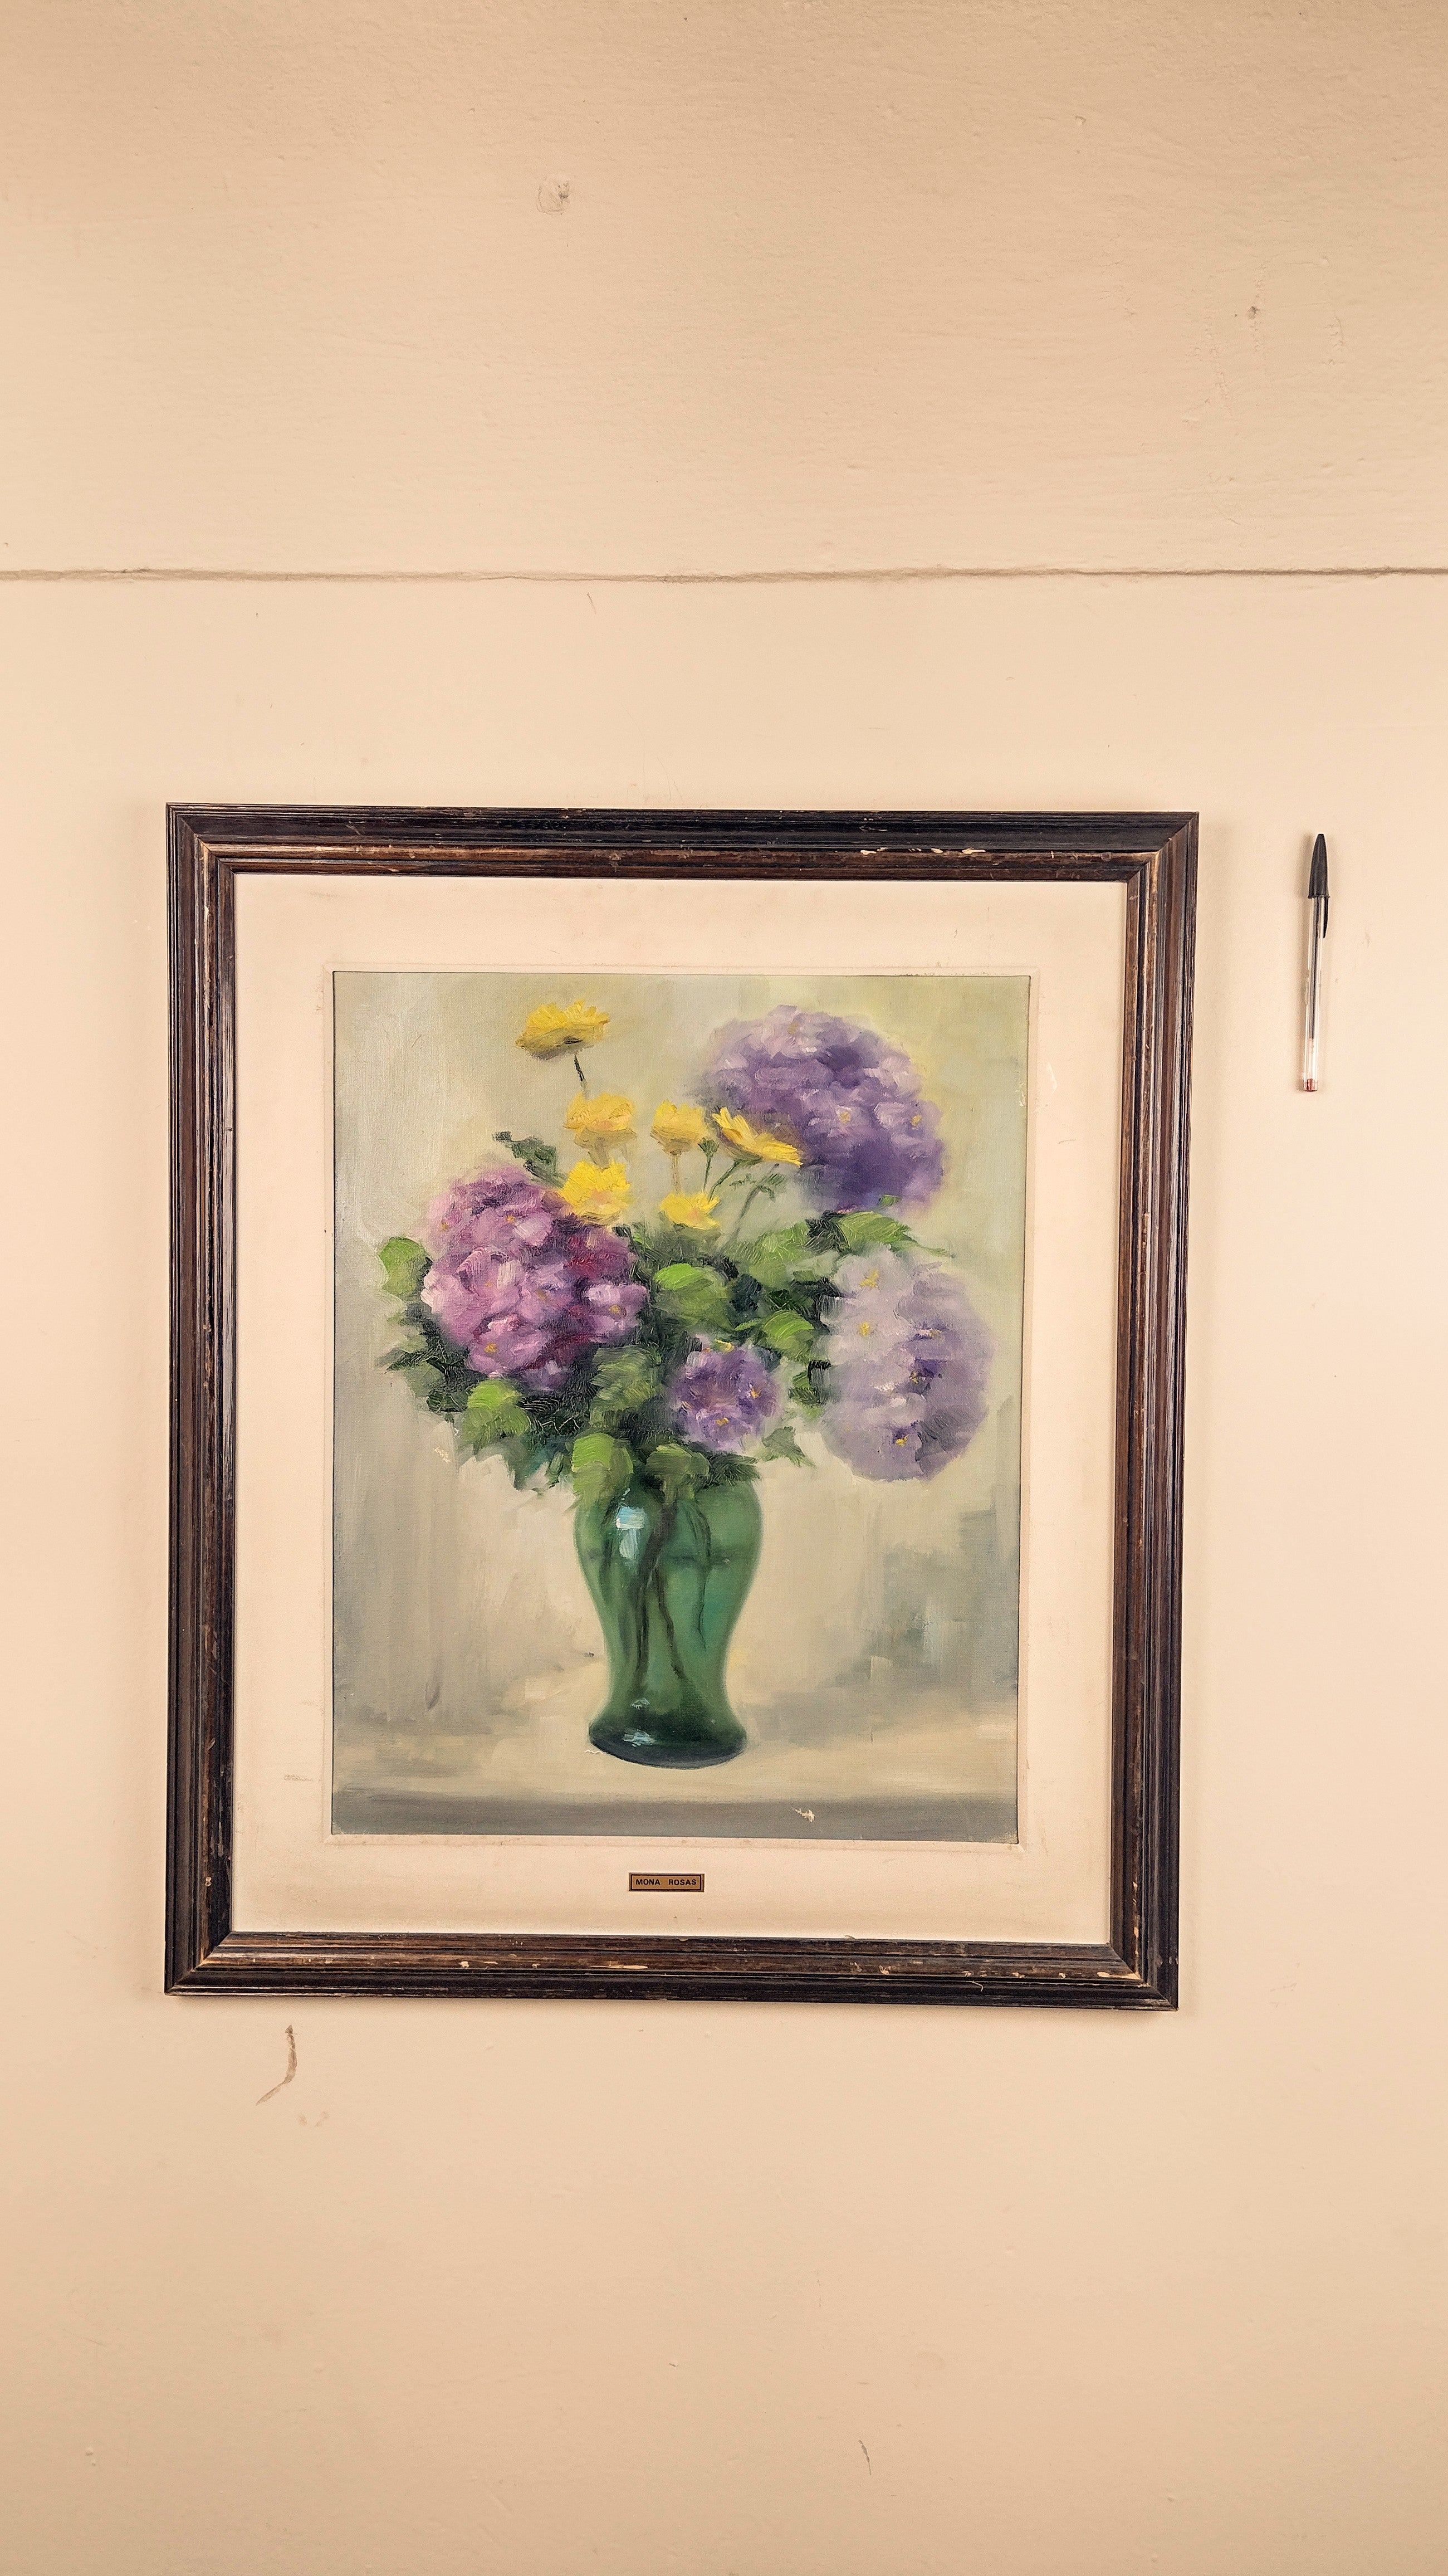 Quadro pintado à mão "Vaso com flores" (68cm X 58cm)